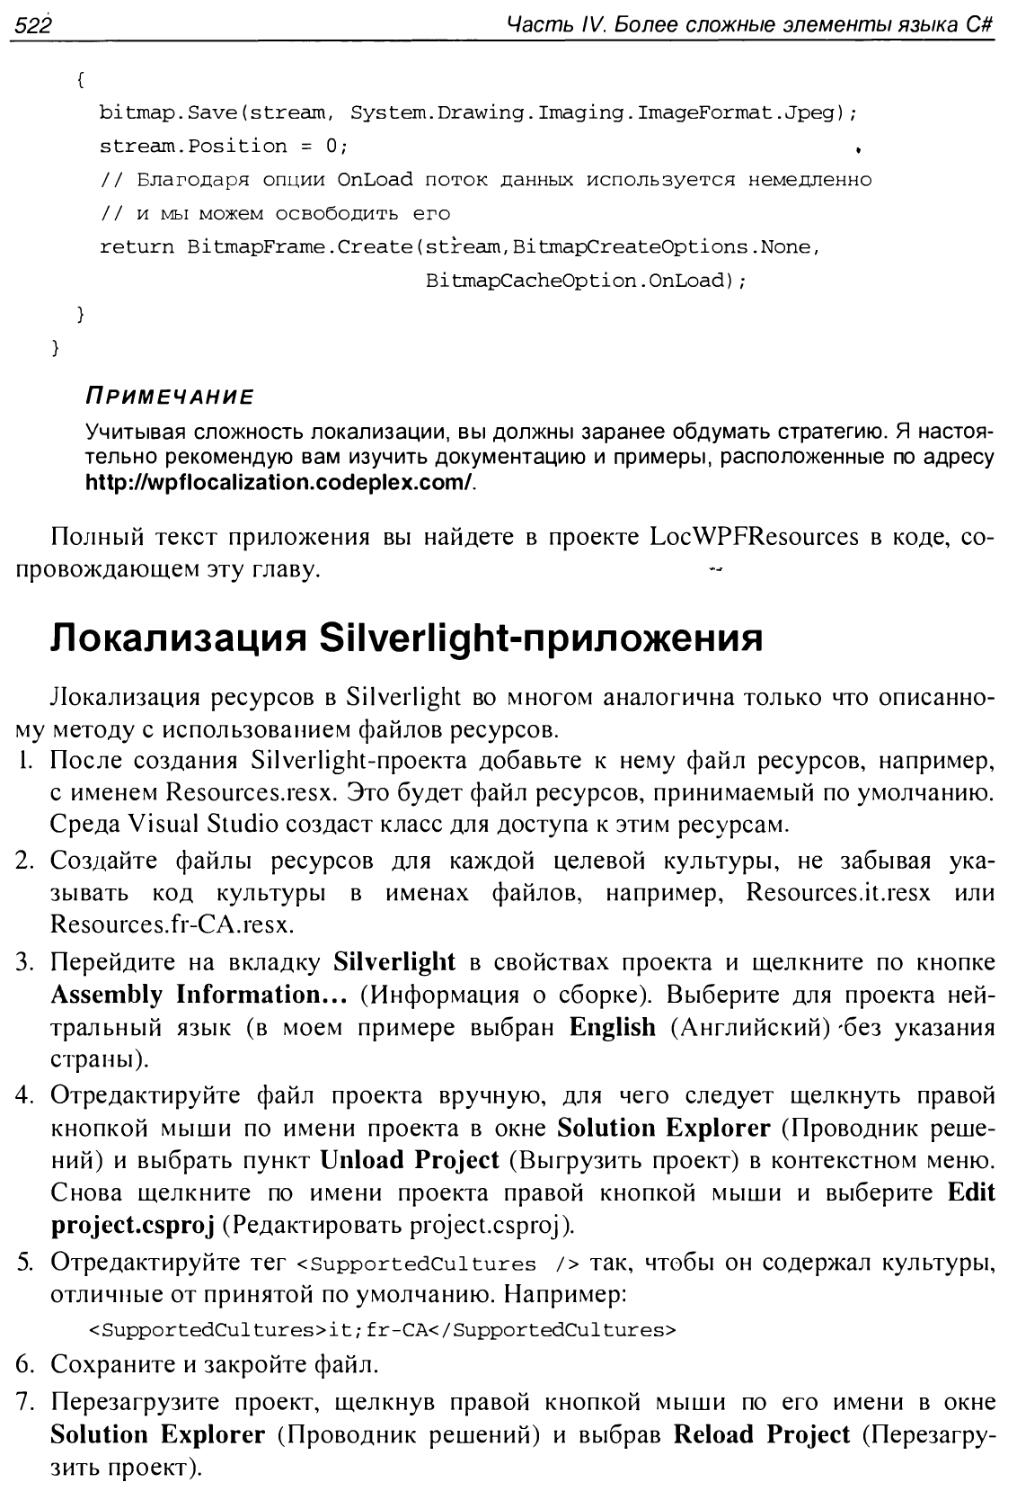 Локализация Silverlight-приложения